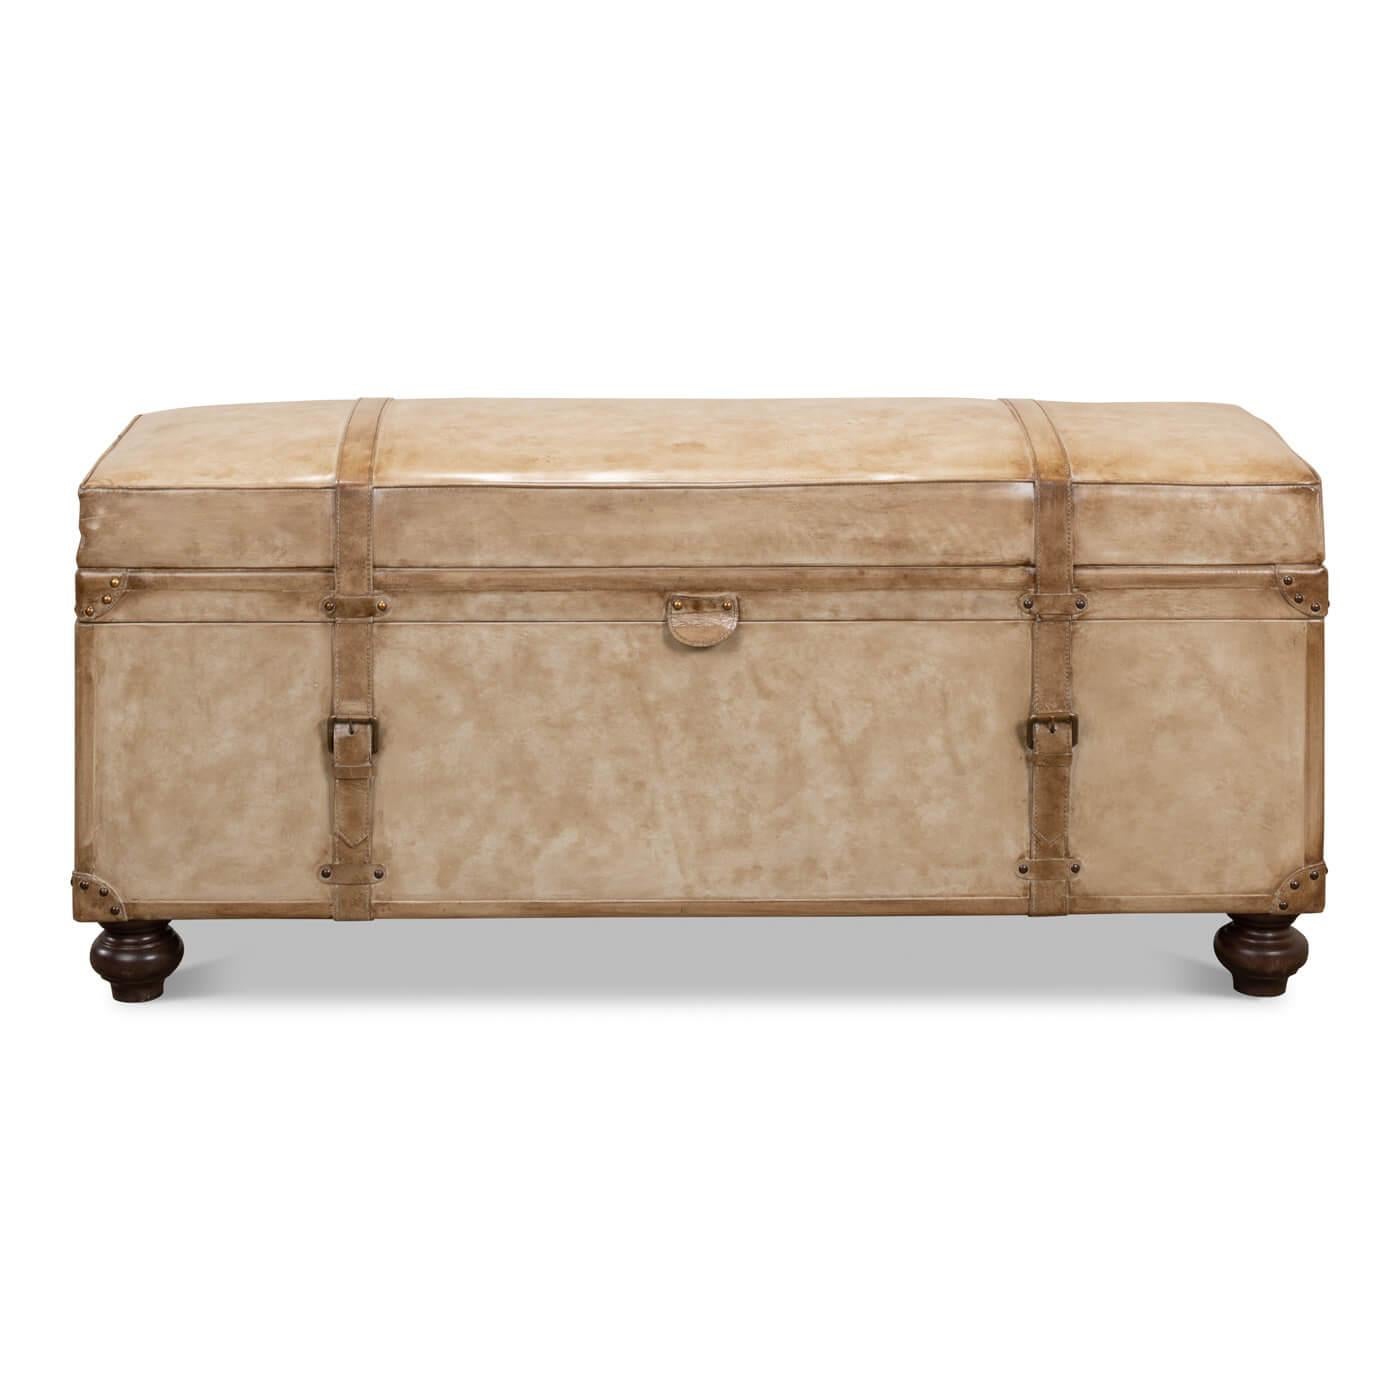 Perlenleder-Kofferraumbank im Vintage-Stil. Ein voll funktionsfähiger Kofferraum, der sich aufklappen lässt, um Stauraum zu bieten. Die gepolsterte Lederaußenseite macht ihn zu einer tollen Sitzbank oder einem niedrigen Tisch, auf dem man die Füße